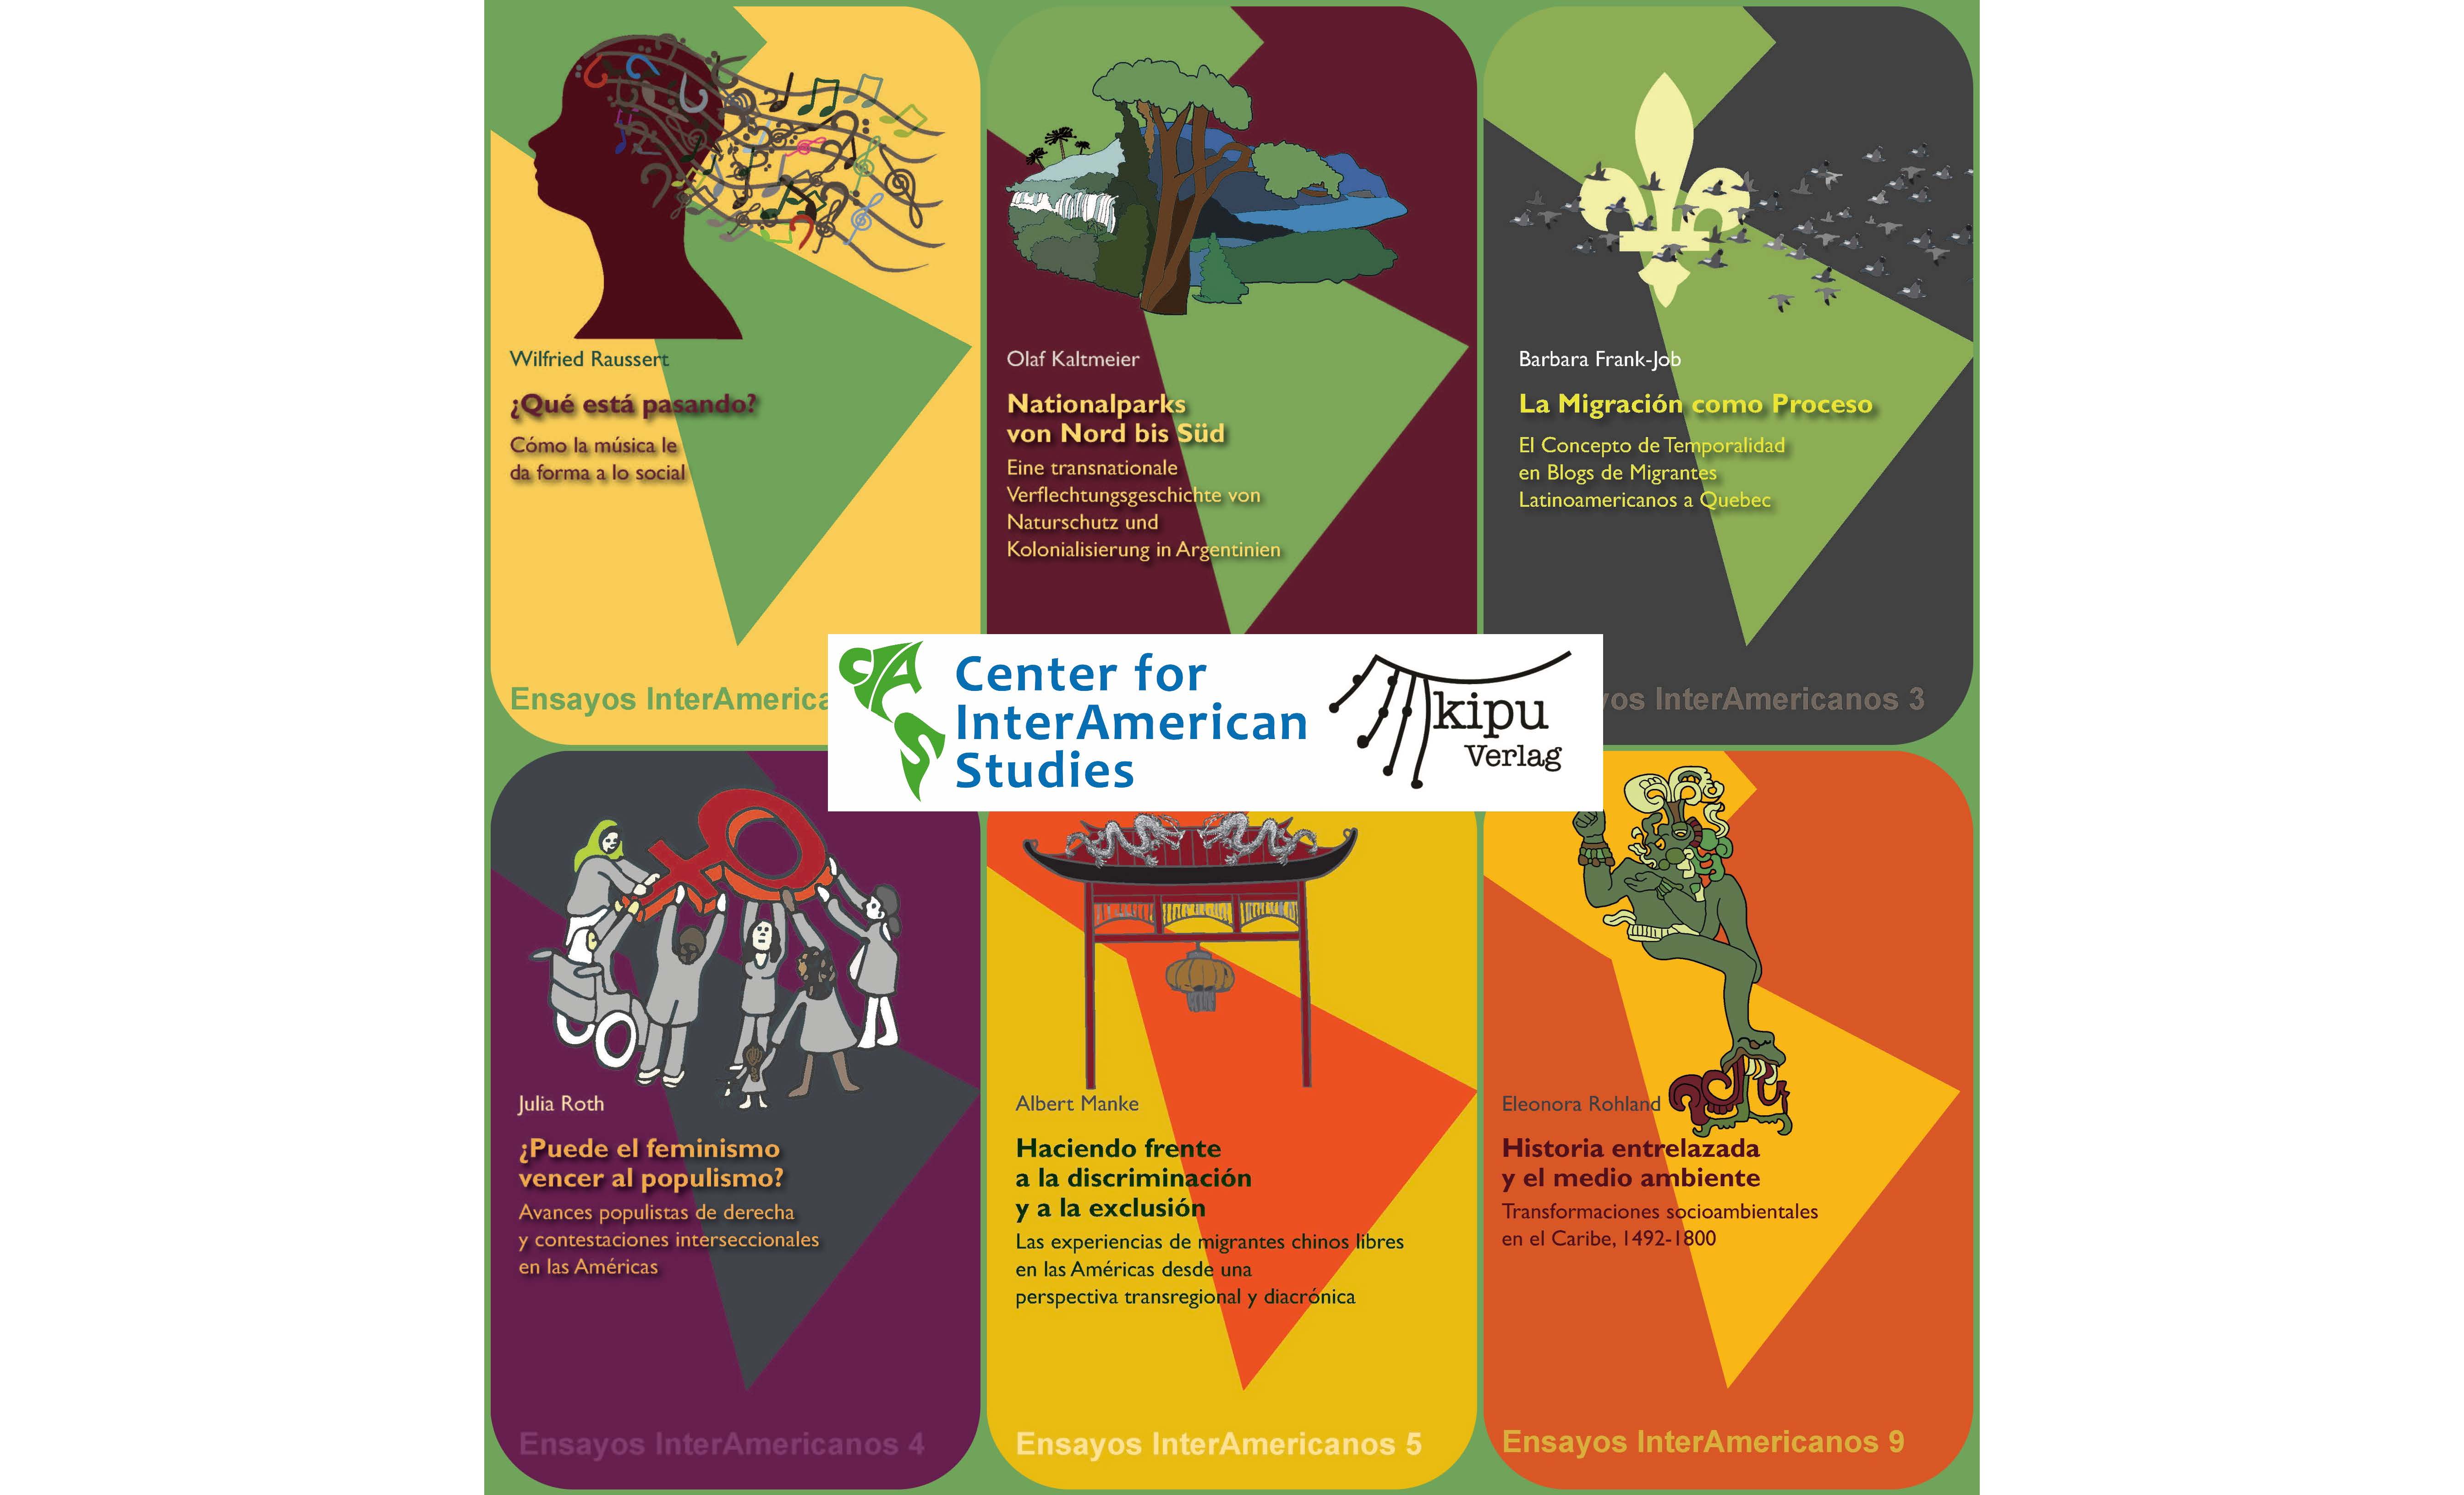 Kachel mit Link zur Buchreihe Ensayos Interamericanos. Das Bild zeigt sämtliche Cover der Ensayos zusammen mit dem CIAS-Logo in der Mitte